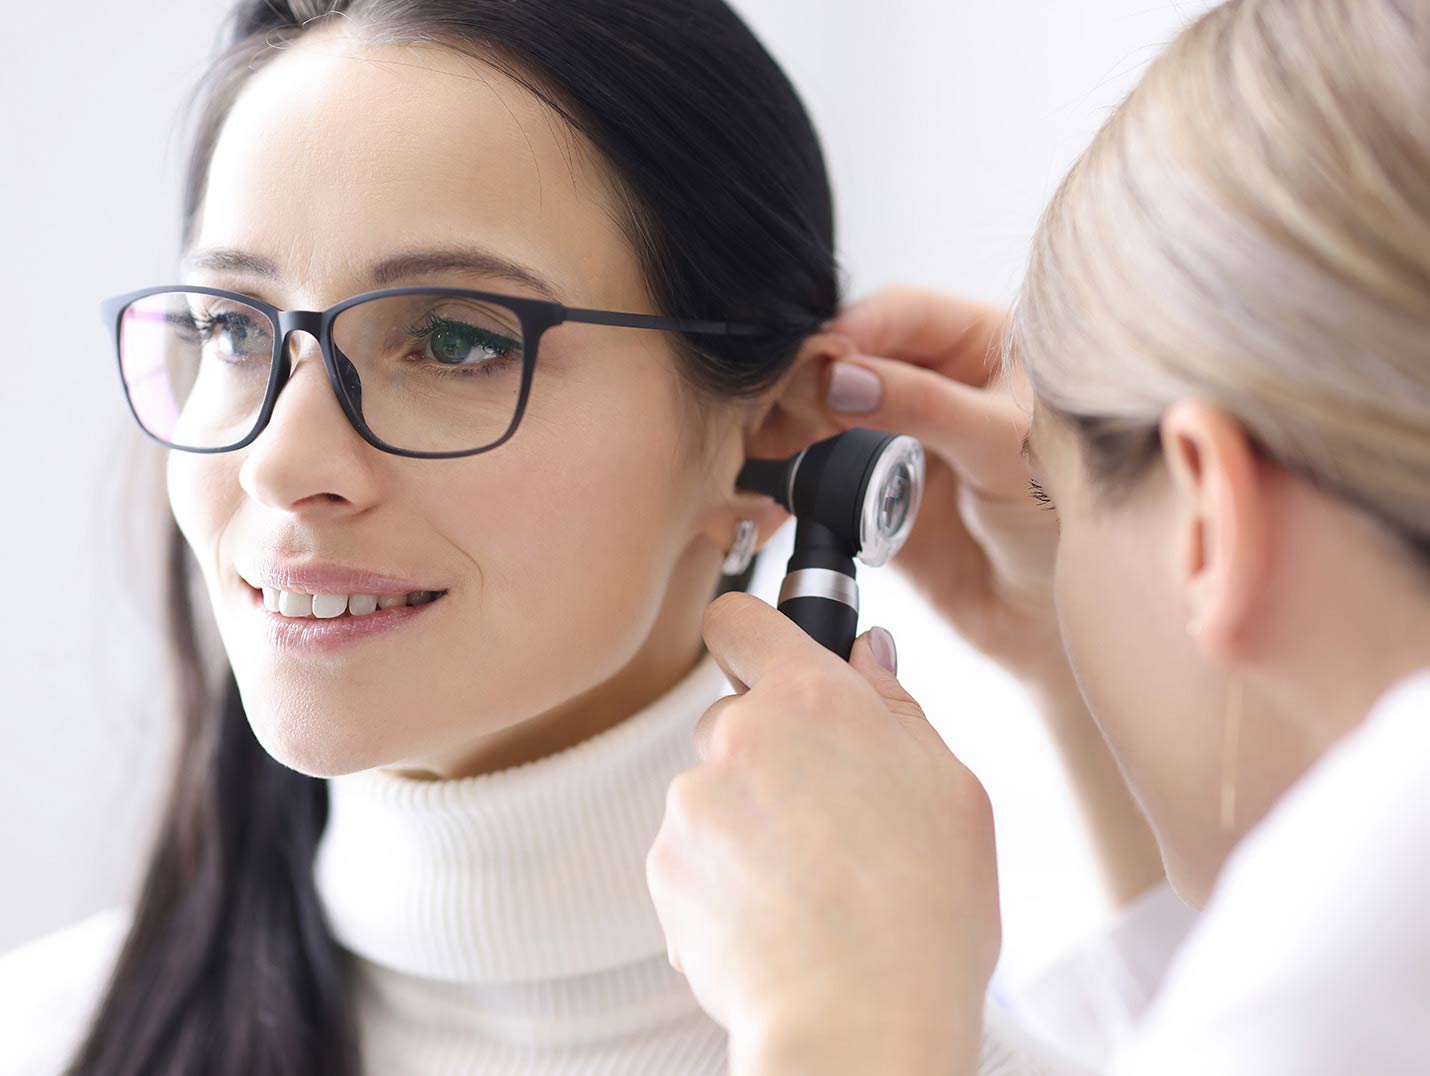 Doctora revisando con un otoscopio el oído de una paciente que está vestida con un suéter blanco y usando lentes negros